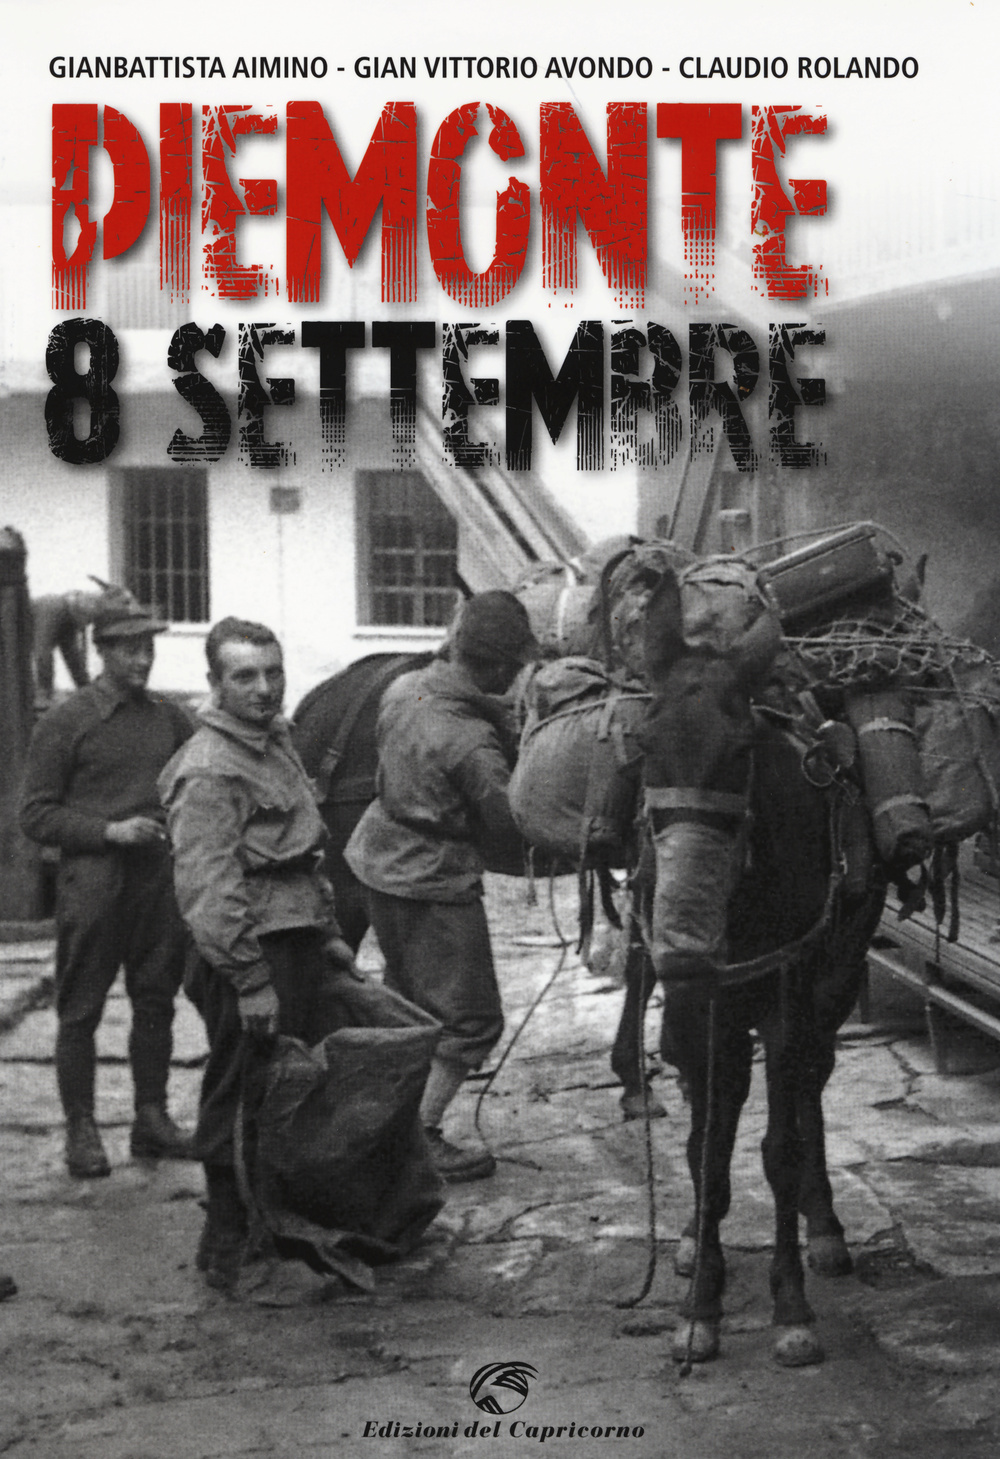 Piemonte 8 settembre. Ediz. illustrata